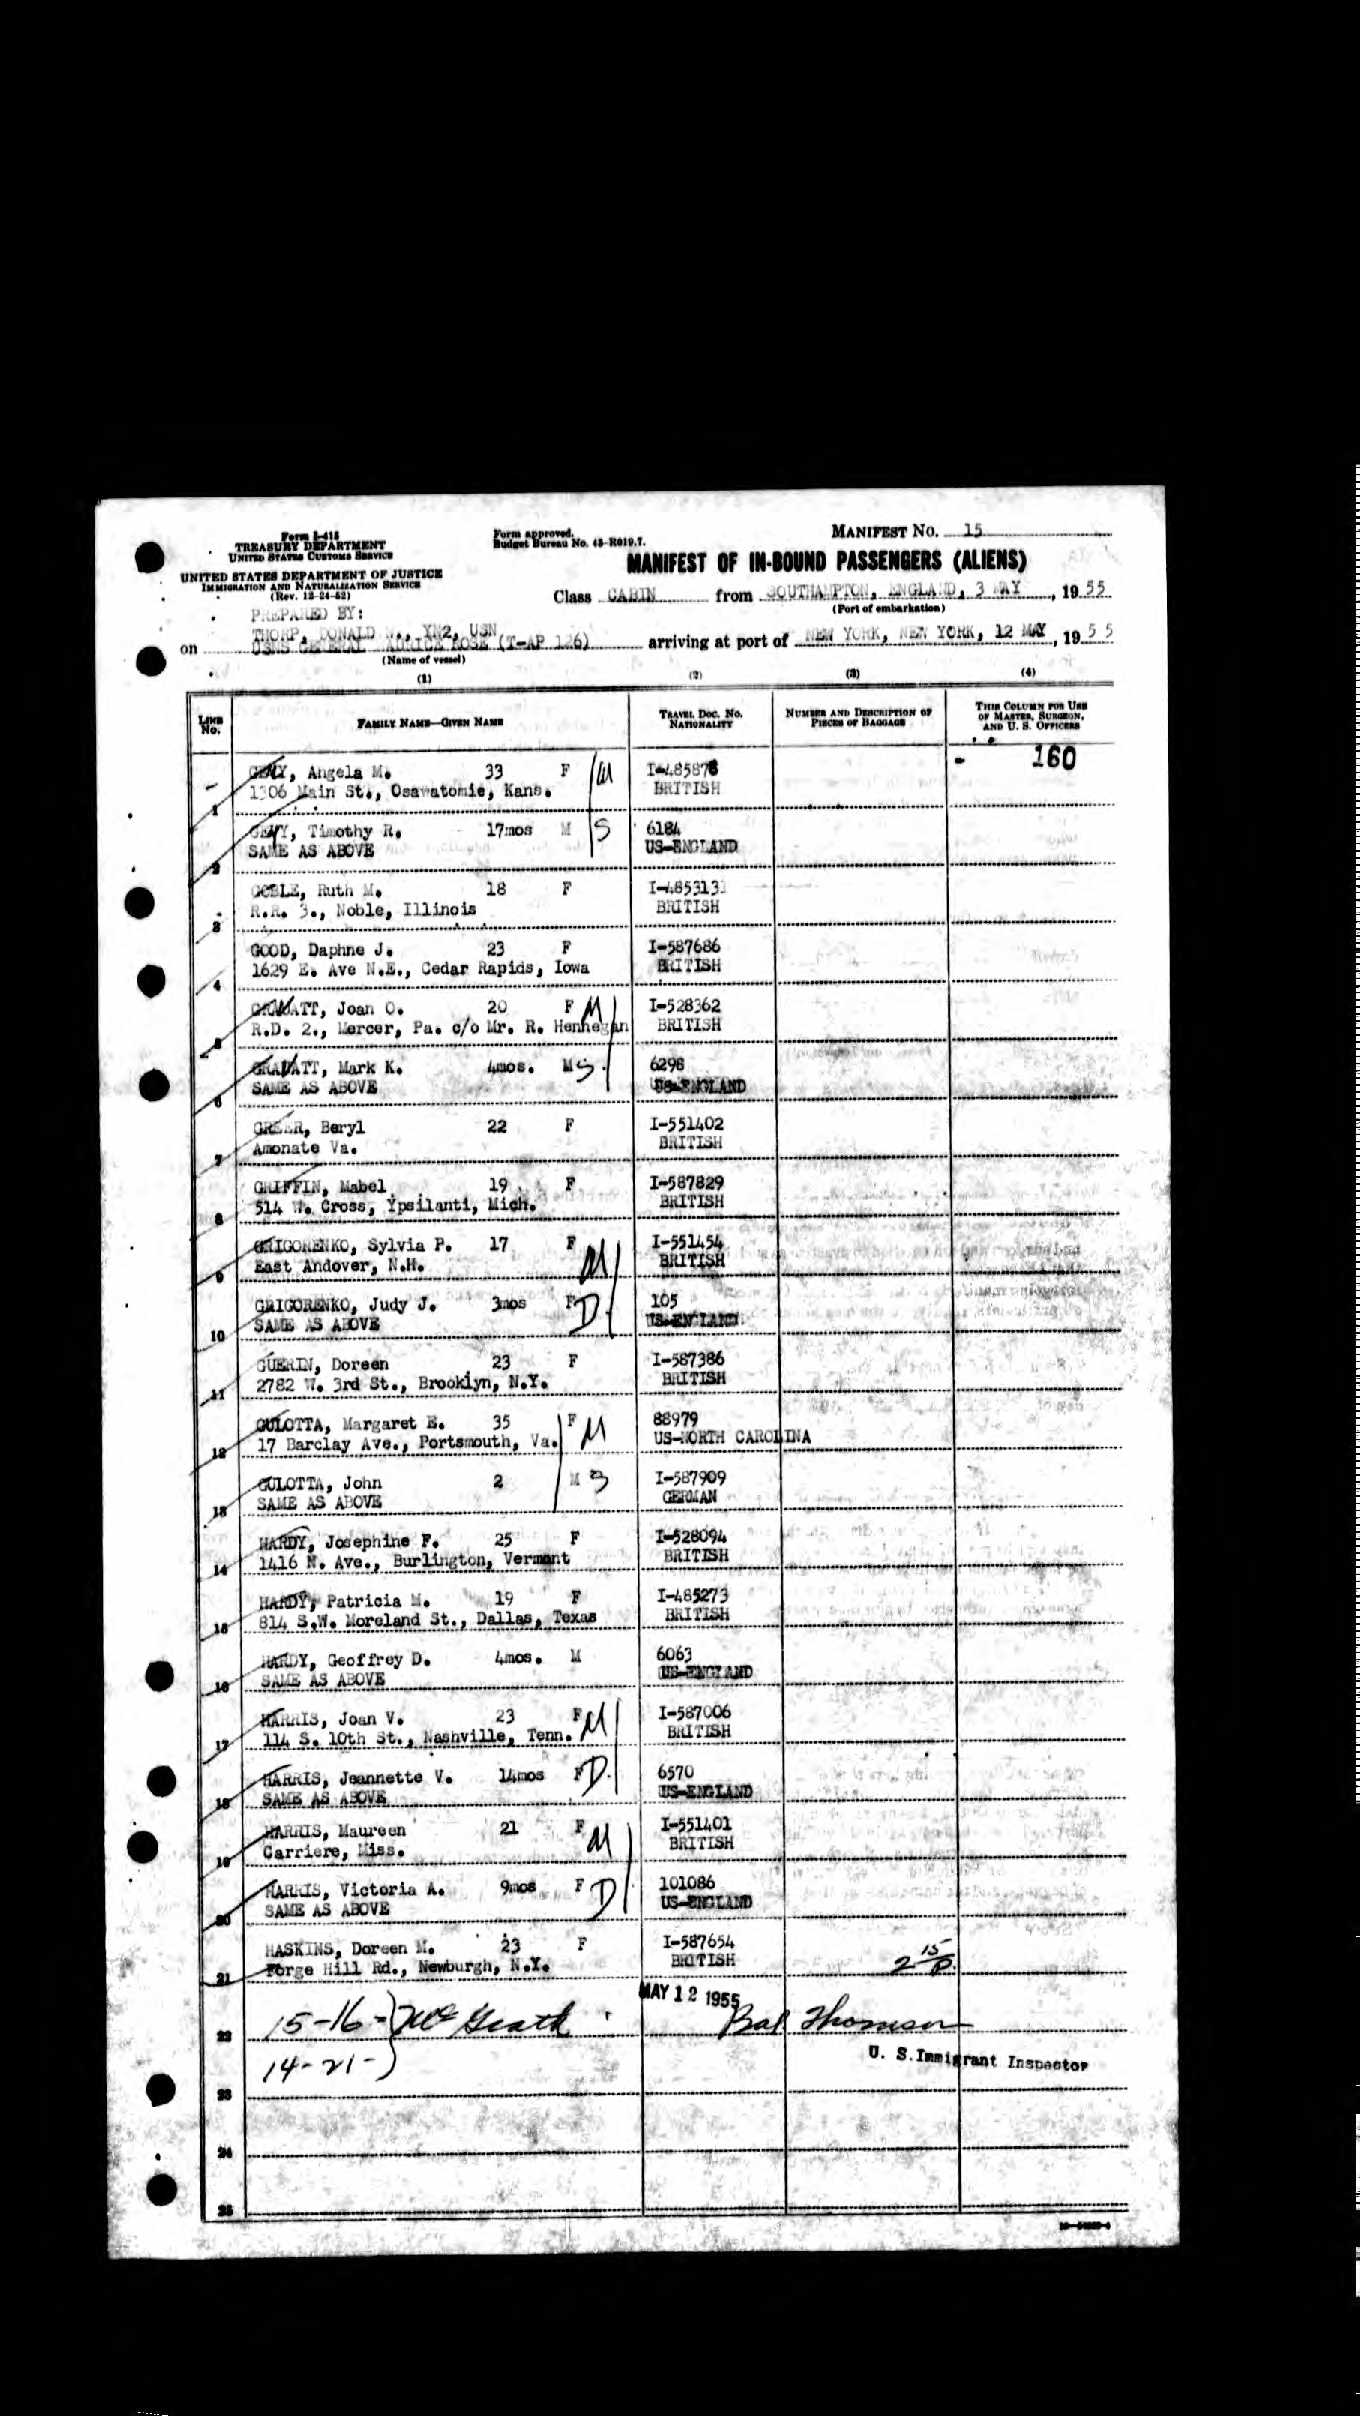 New York Passenger List, Harris Family, 1955